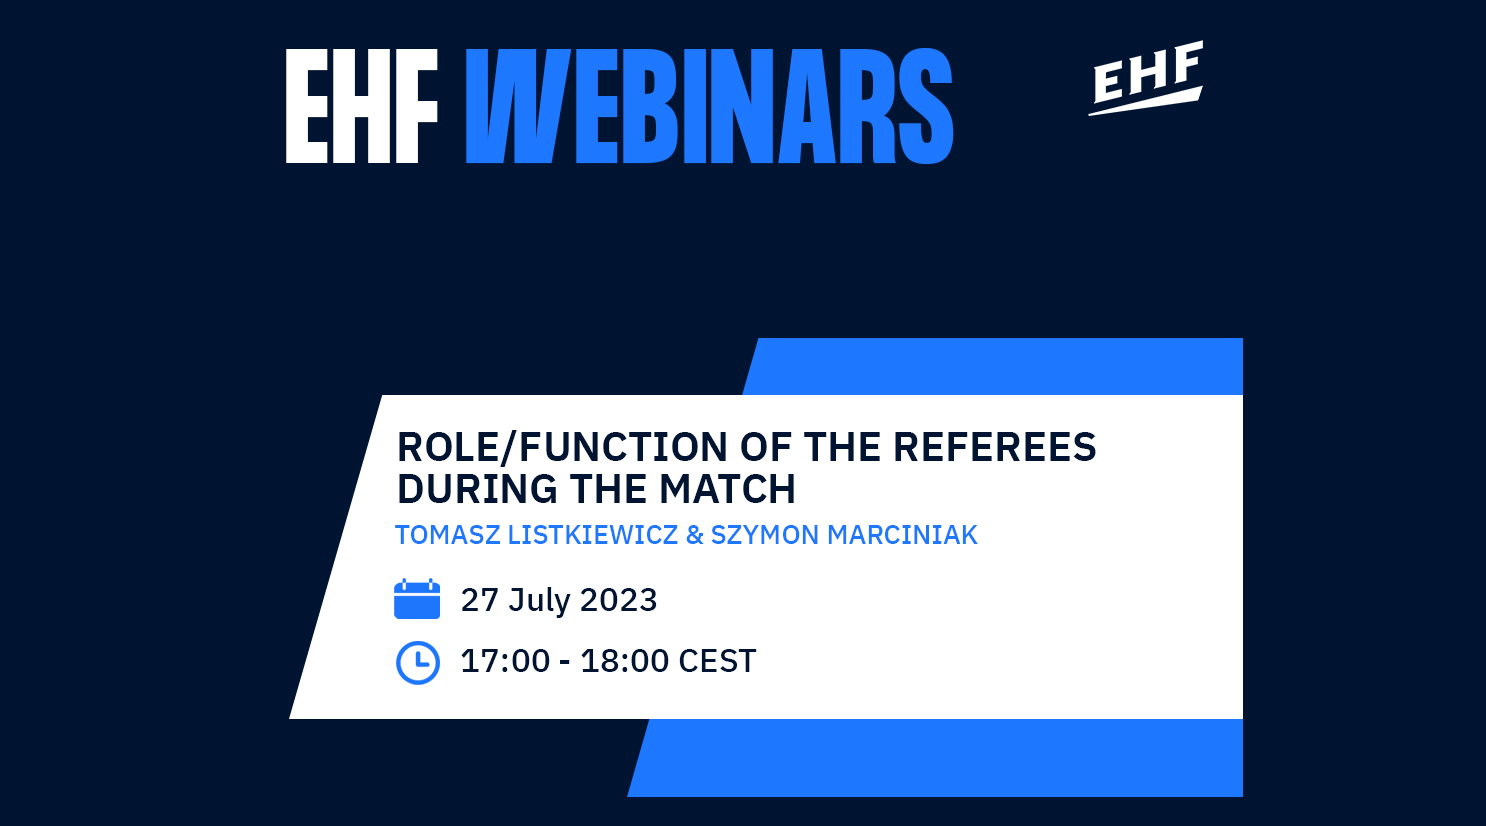 Trenutno pregledavate EHF Webinar koji se bavi raznim sudačkim temama u četvrtak 27. srpnja u 17:00 CEST